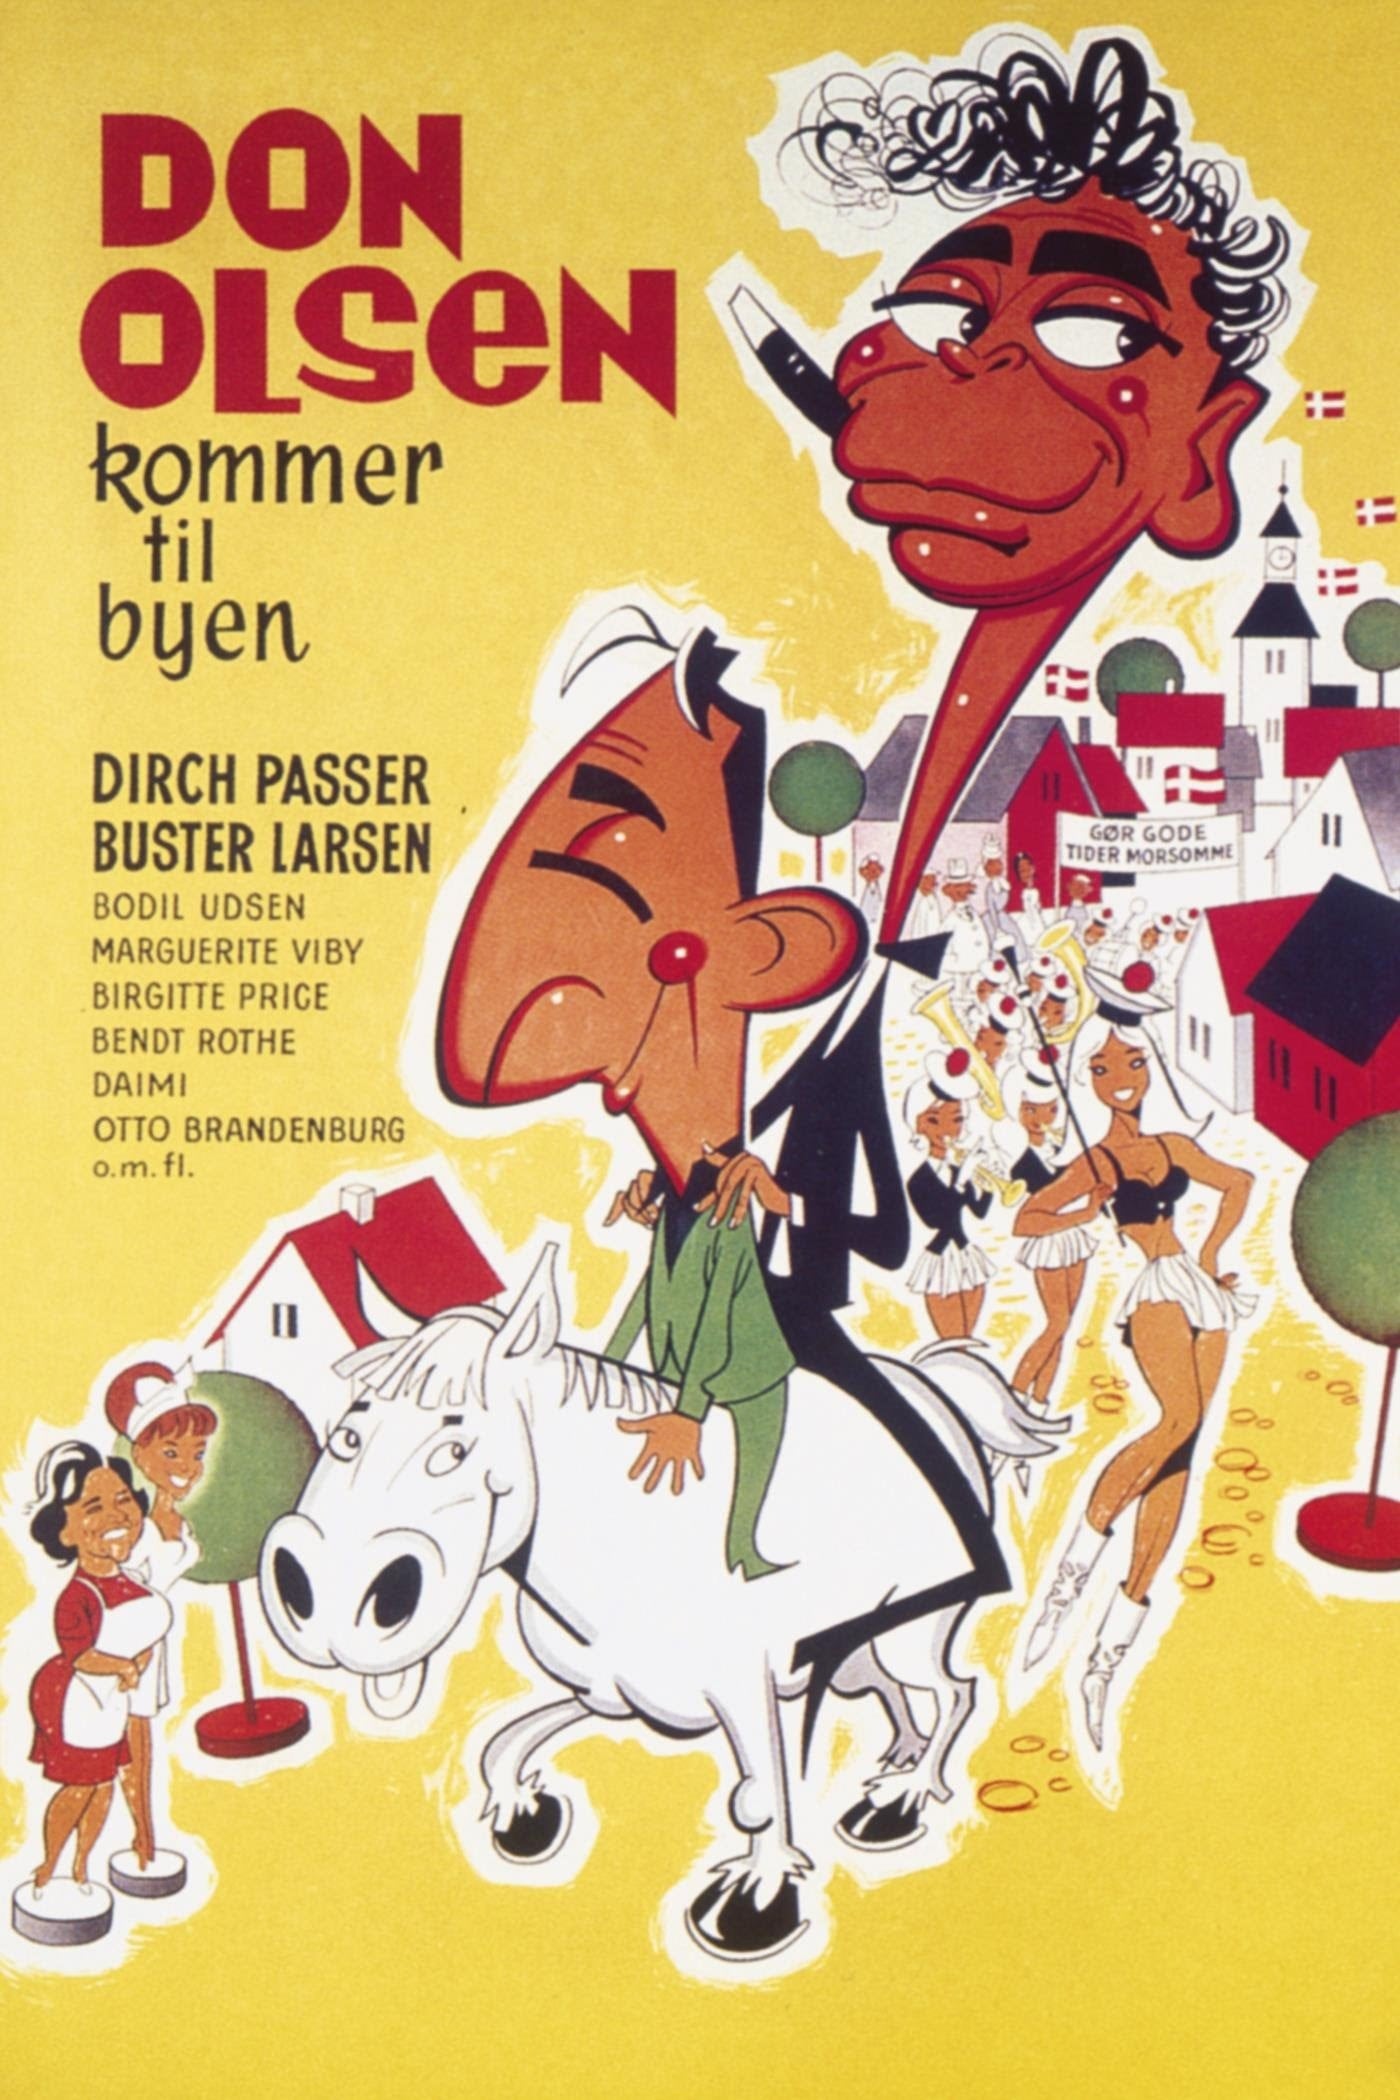 Don Olsen kommer til byen (1964)